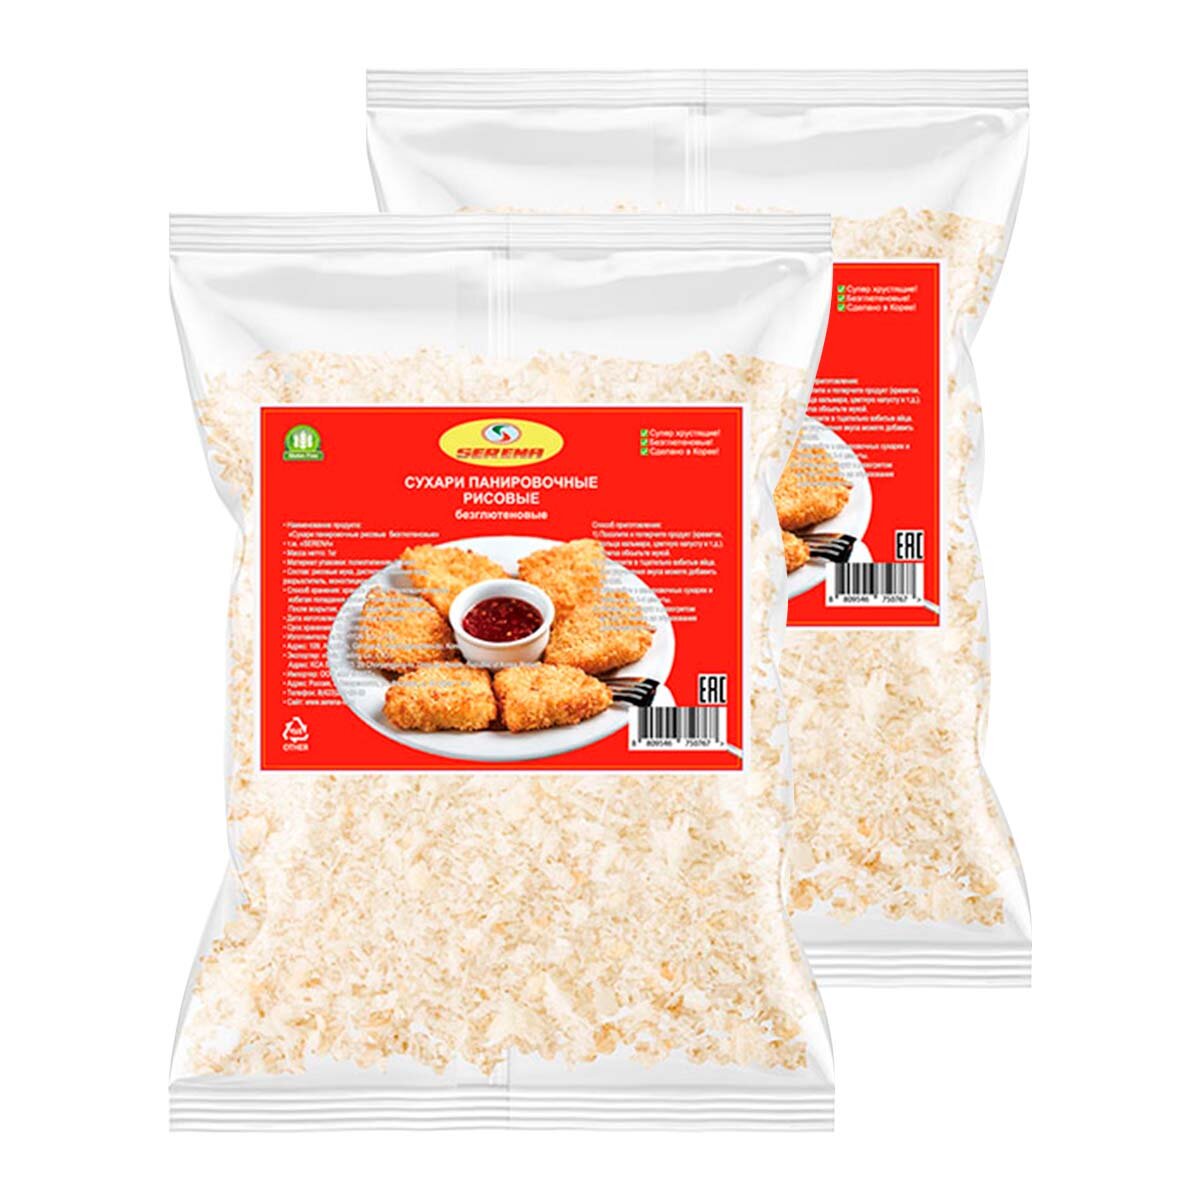 Сухари панировочные рисовые без глютена Serena, 200 г х 2 шт